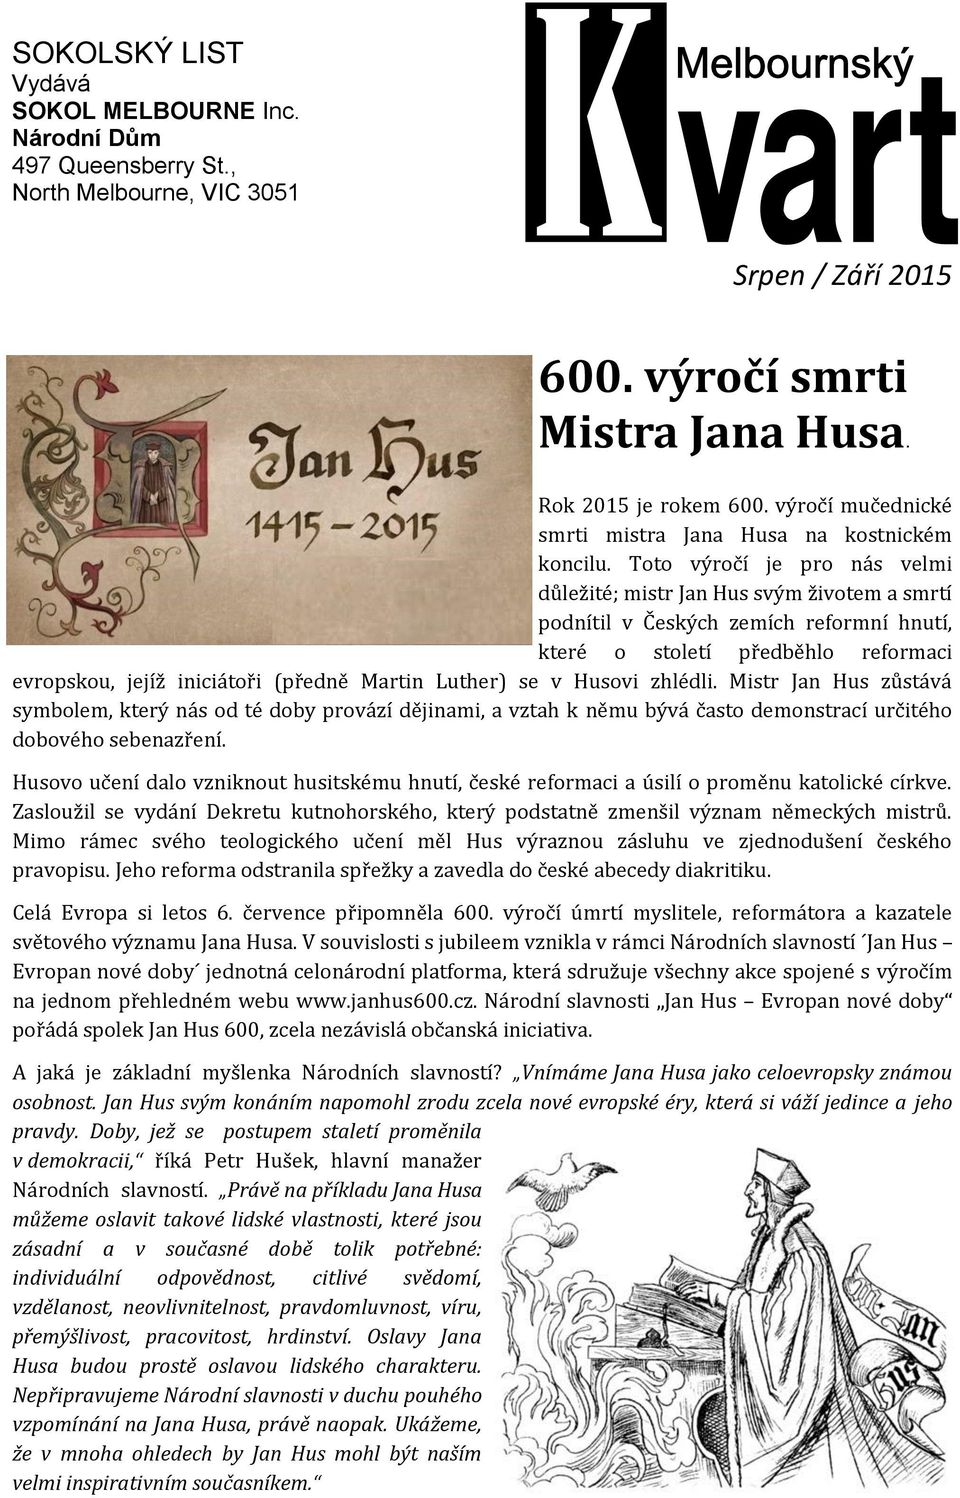 Toto výročí je pro nas velmi duležite; mistr Jan Hus svým životem a smrtí podnítil v Českýčh žemíčh reformní hnutí, ktere o století predbehlo reformači evropskou, jejíž iničiatori (predne Martin